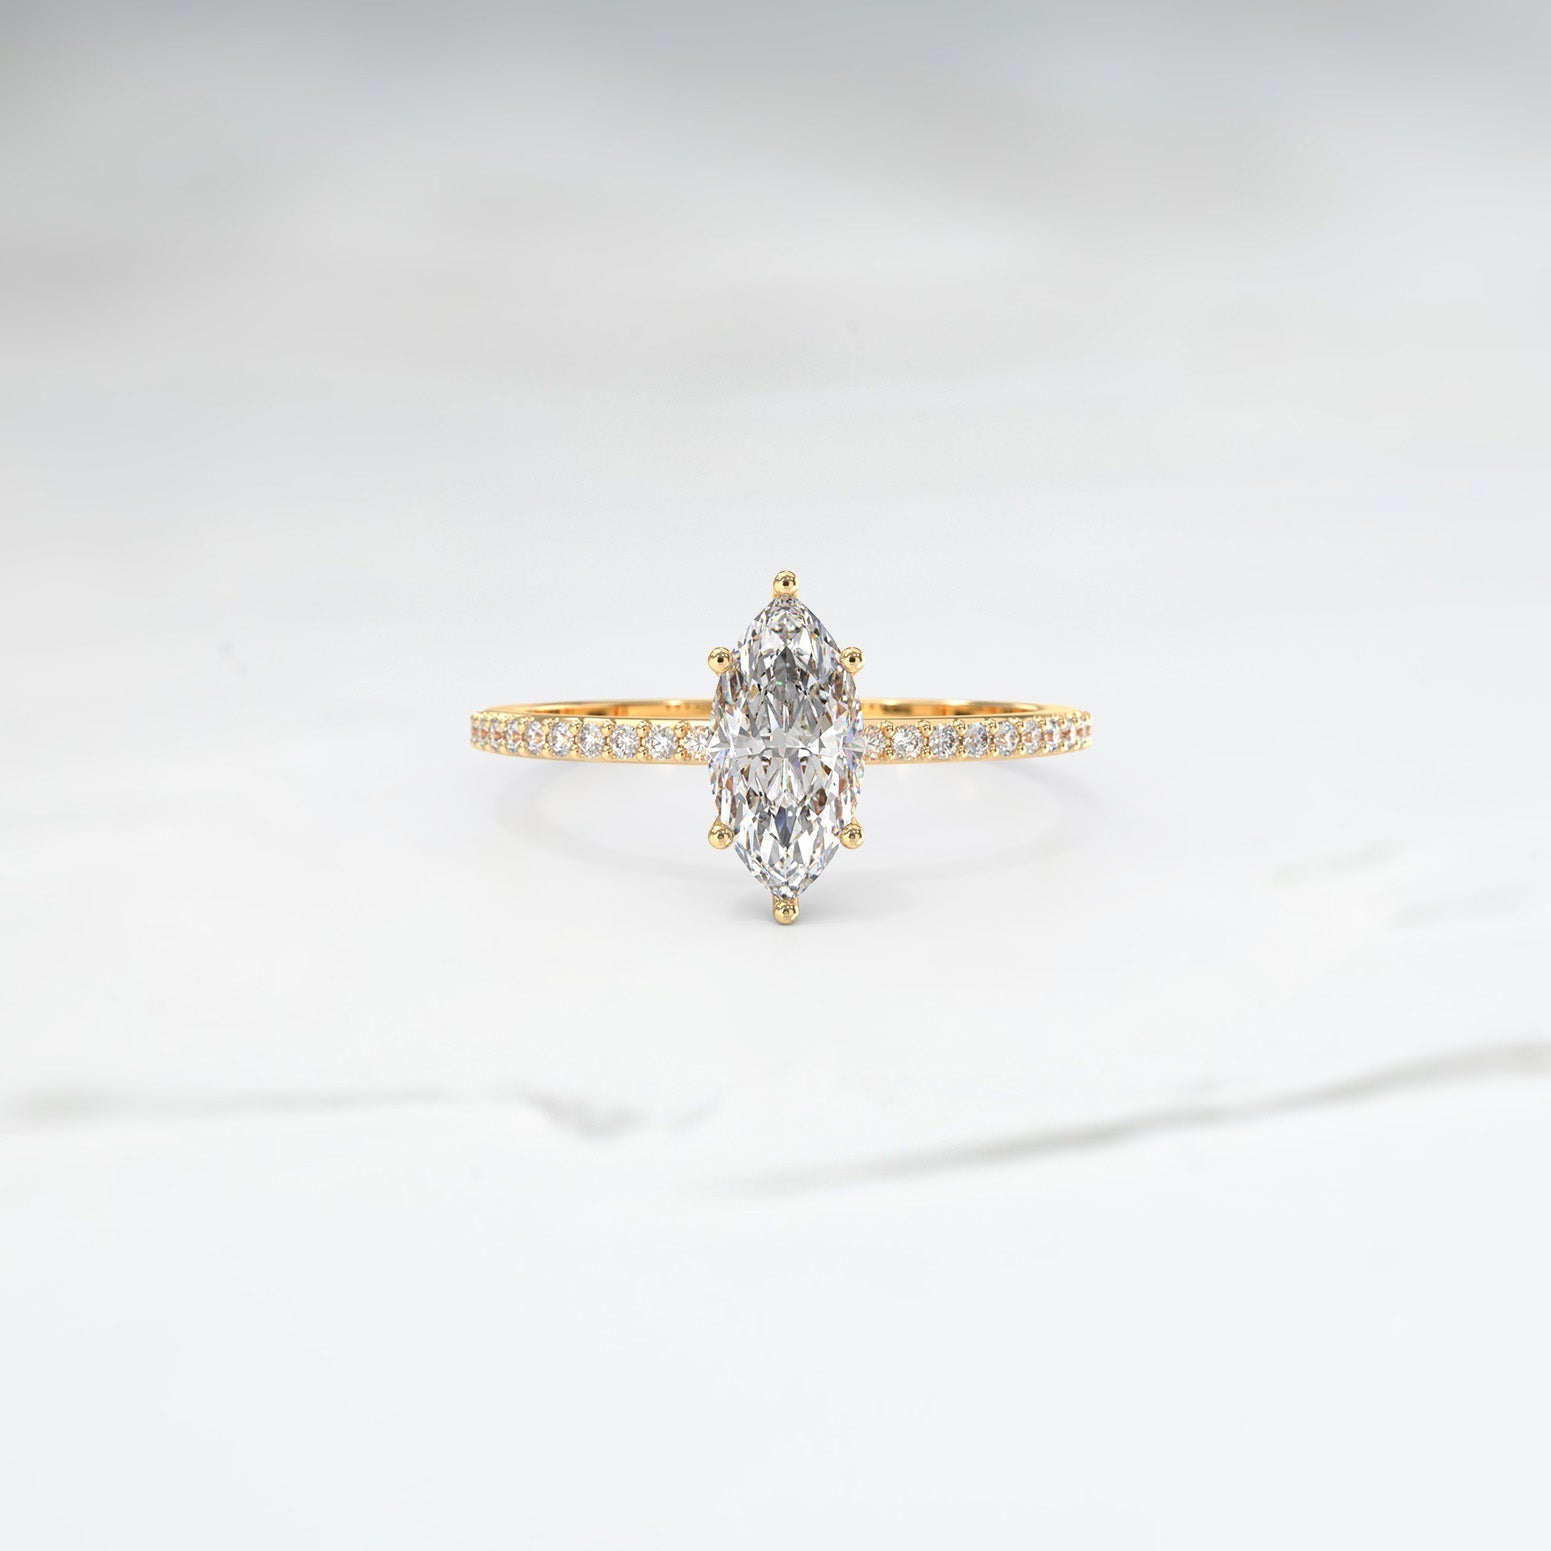 Customisable Frost Setting - Lelya - bespoke engagement and wedding rings made in Scotland, UK